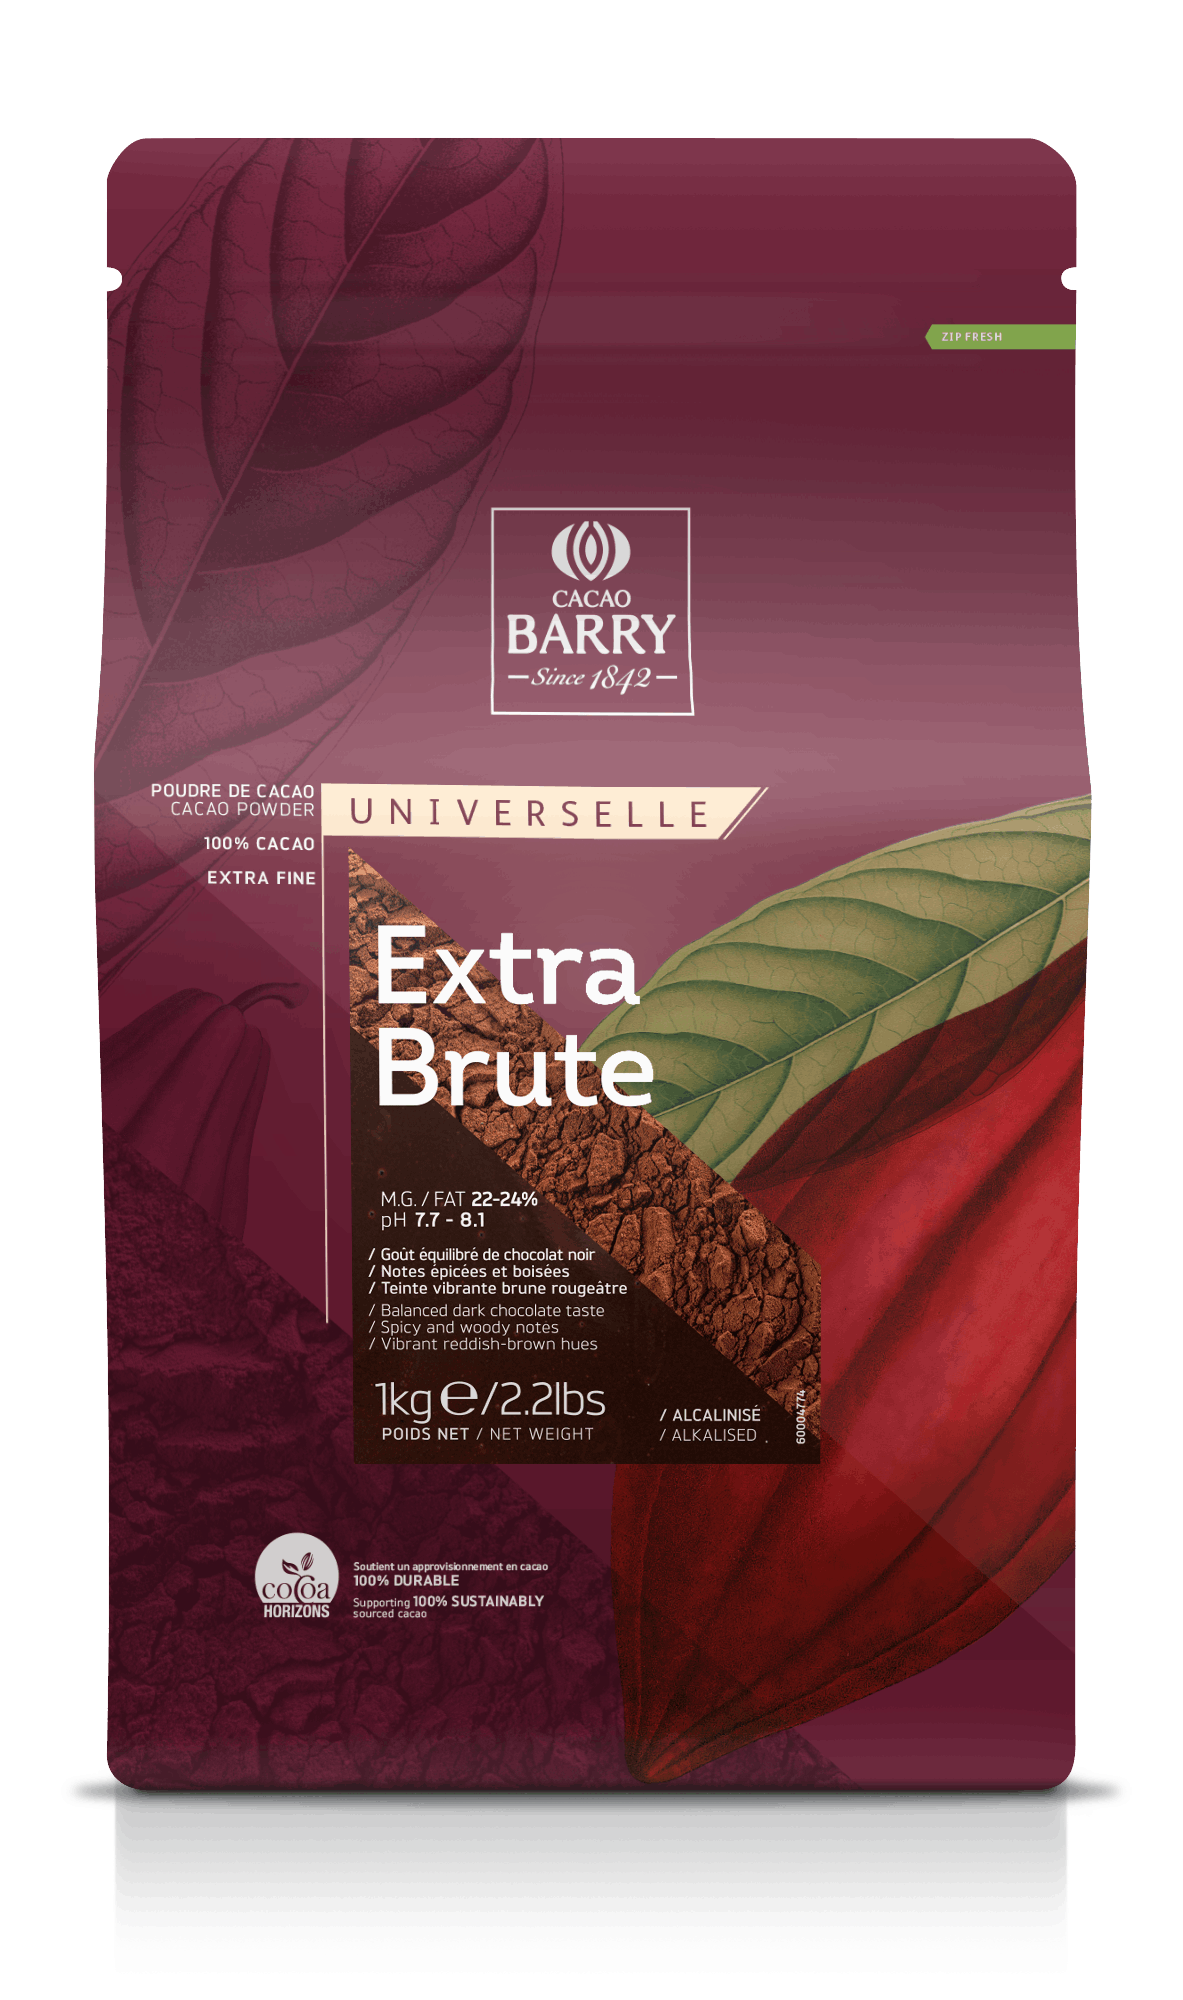 Cacao alcanizata EXTRA BRUTE 22-24%, 1kg DCP-22EXBRU-E0-89B Cacao Barry